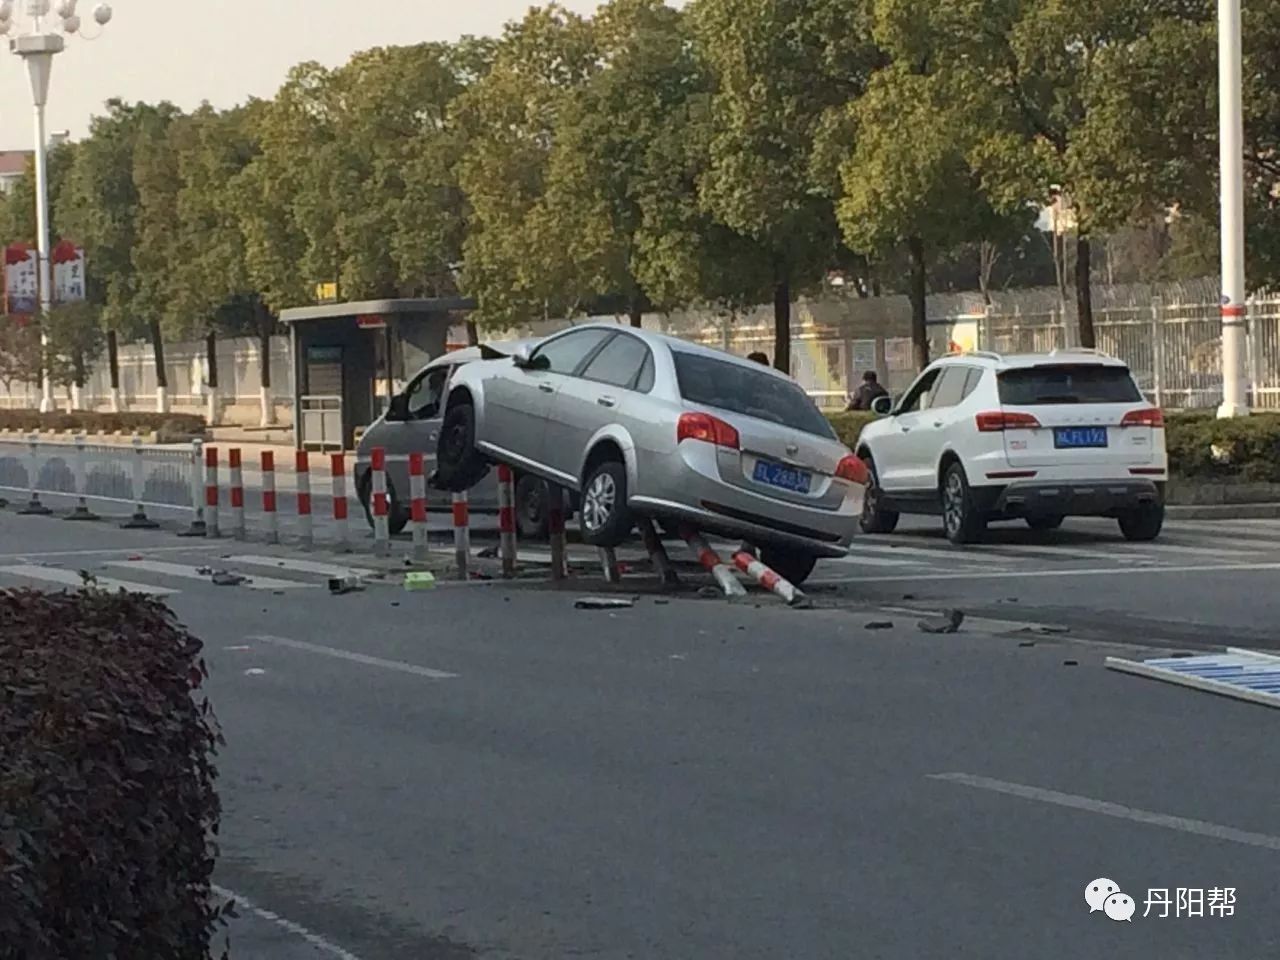 丹阳街头惊现奇葩车祸现场!汽车架在马路上(事发监控视频来了)